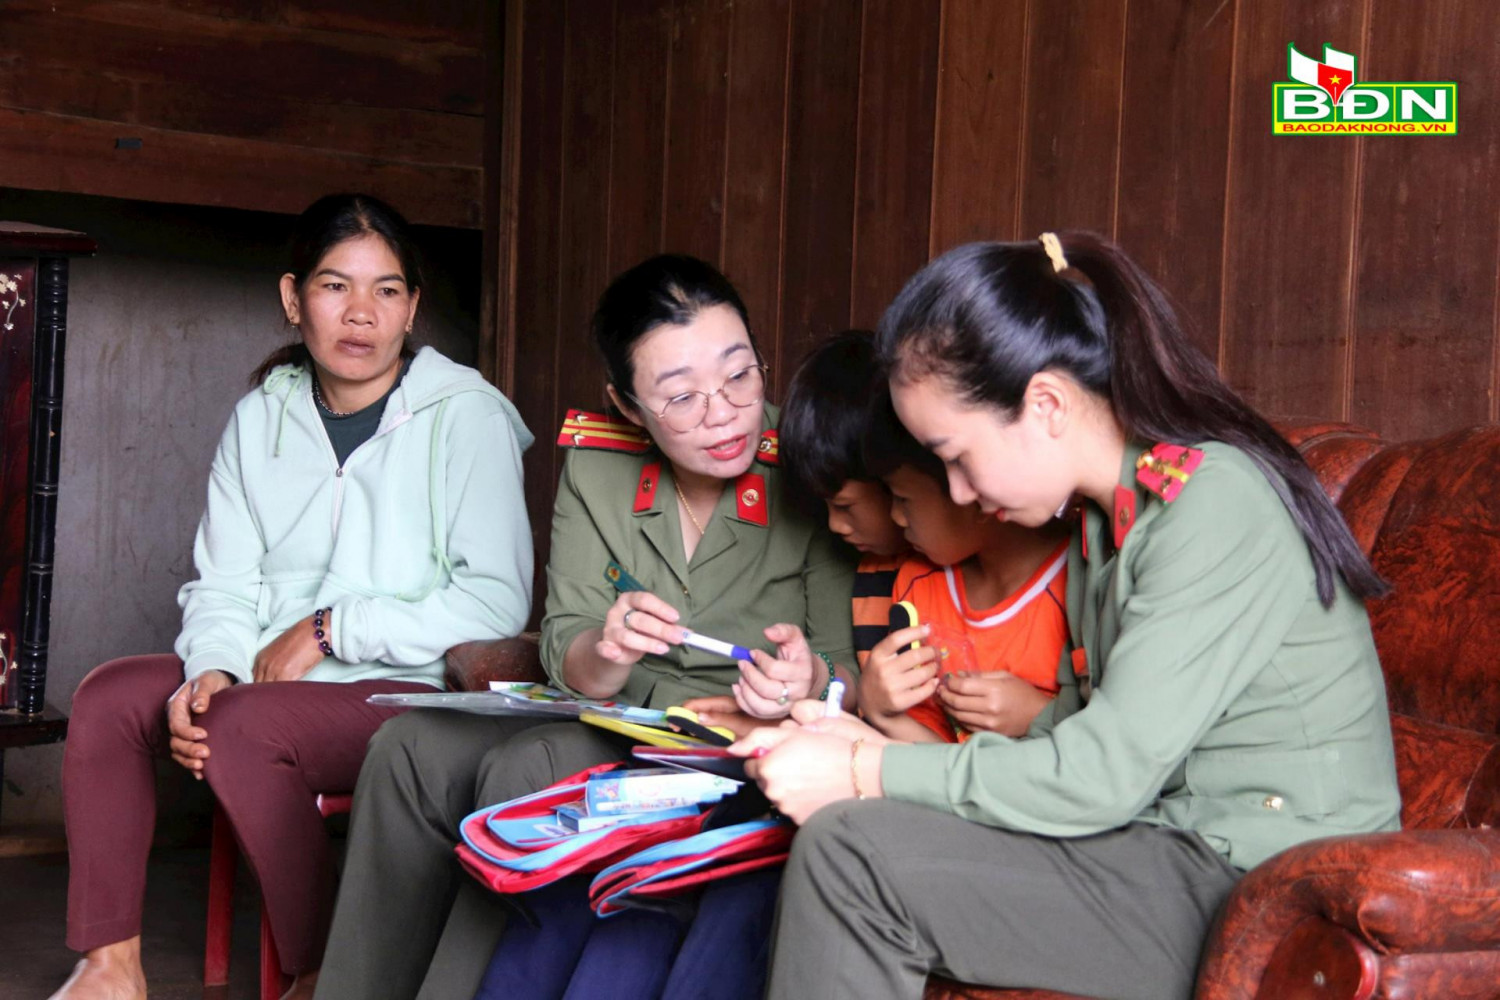 Hội Phụ nữ Công an tỉnh Đắk Nông đã nhận đỡ đầu 2 em cho đến năm 18 tuổi, với mức hỗ trợ 1 triệu đồng/tháng.